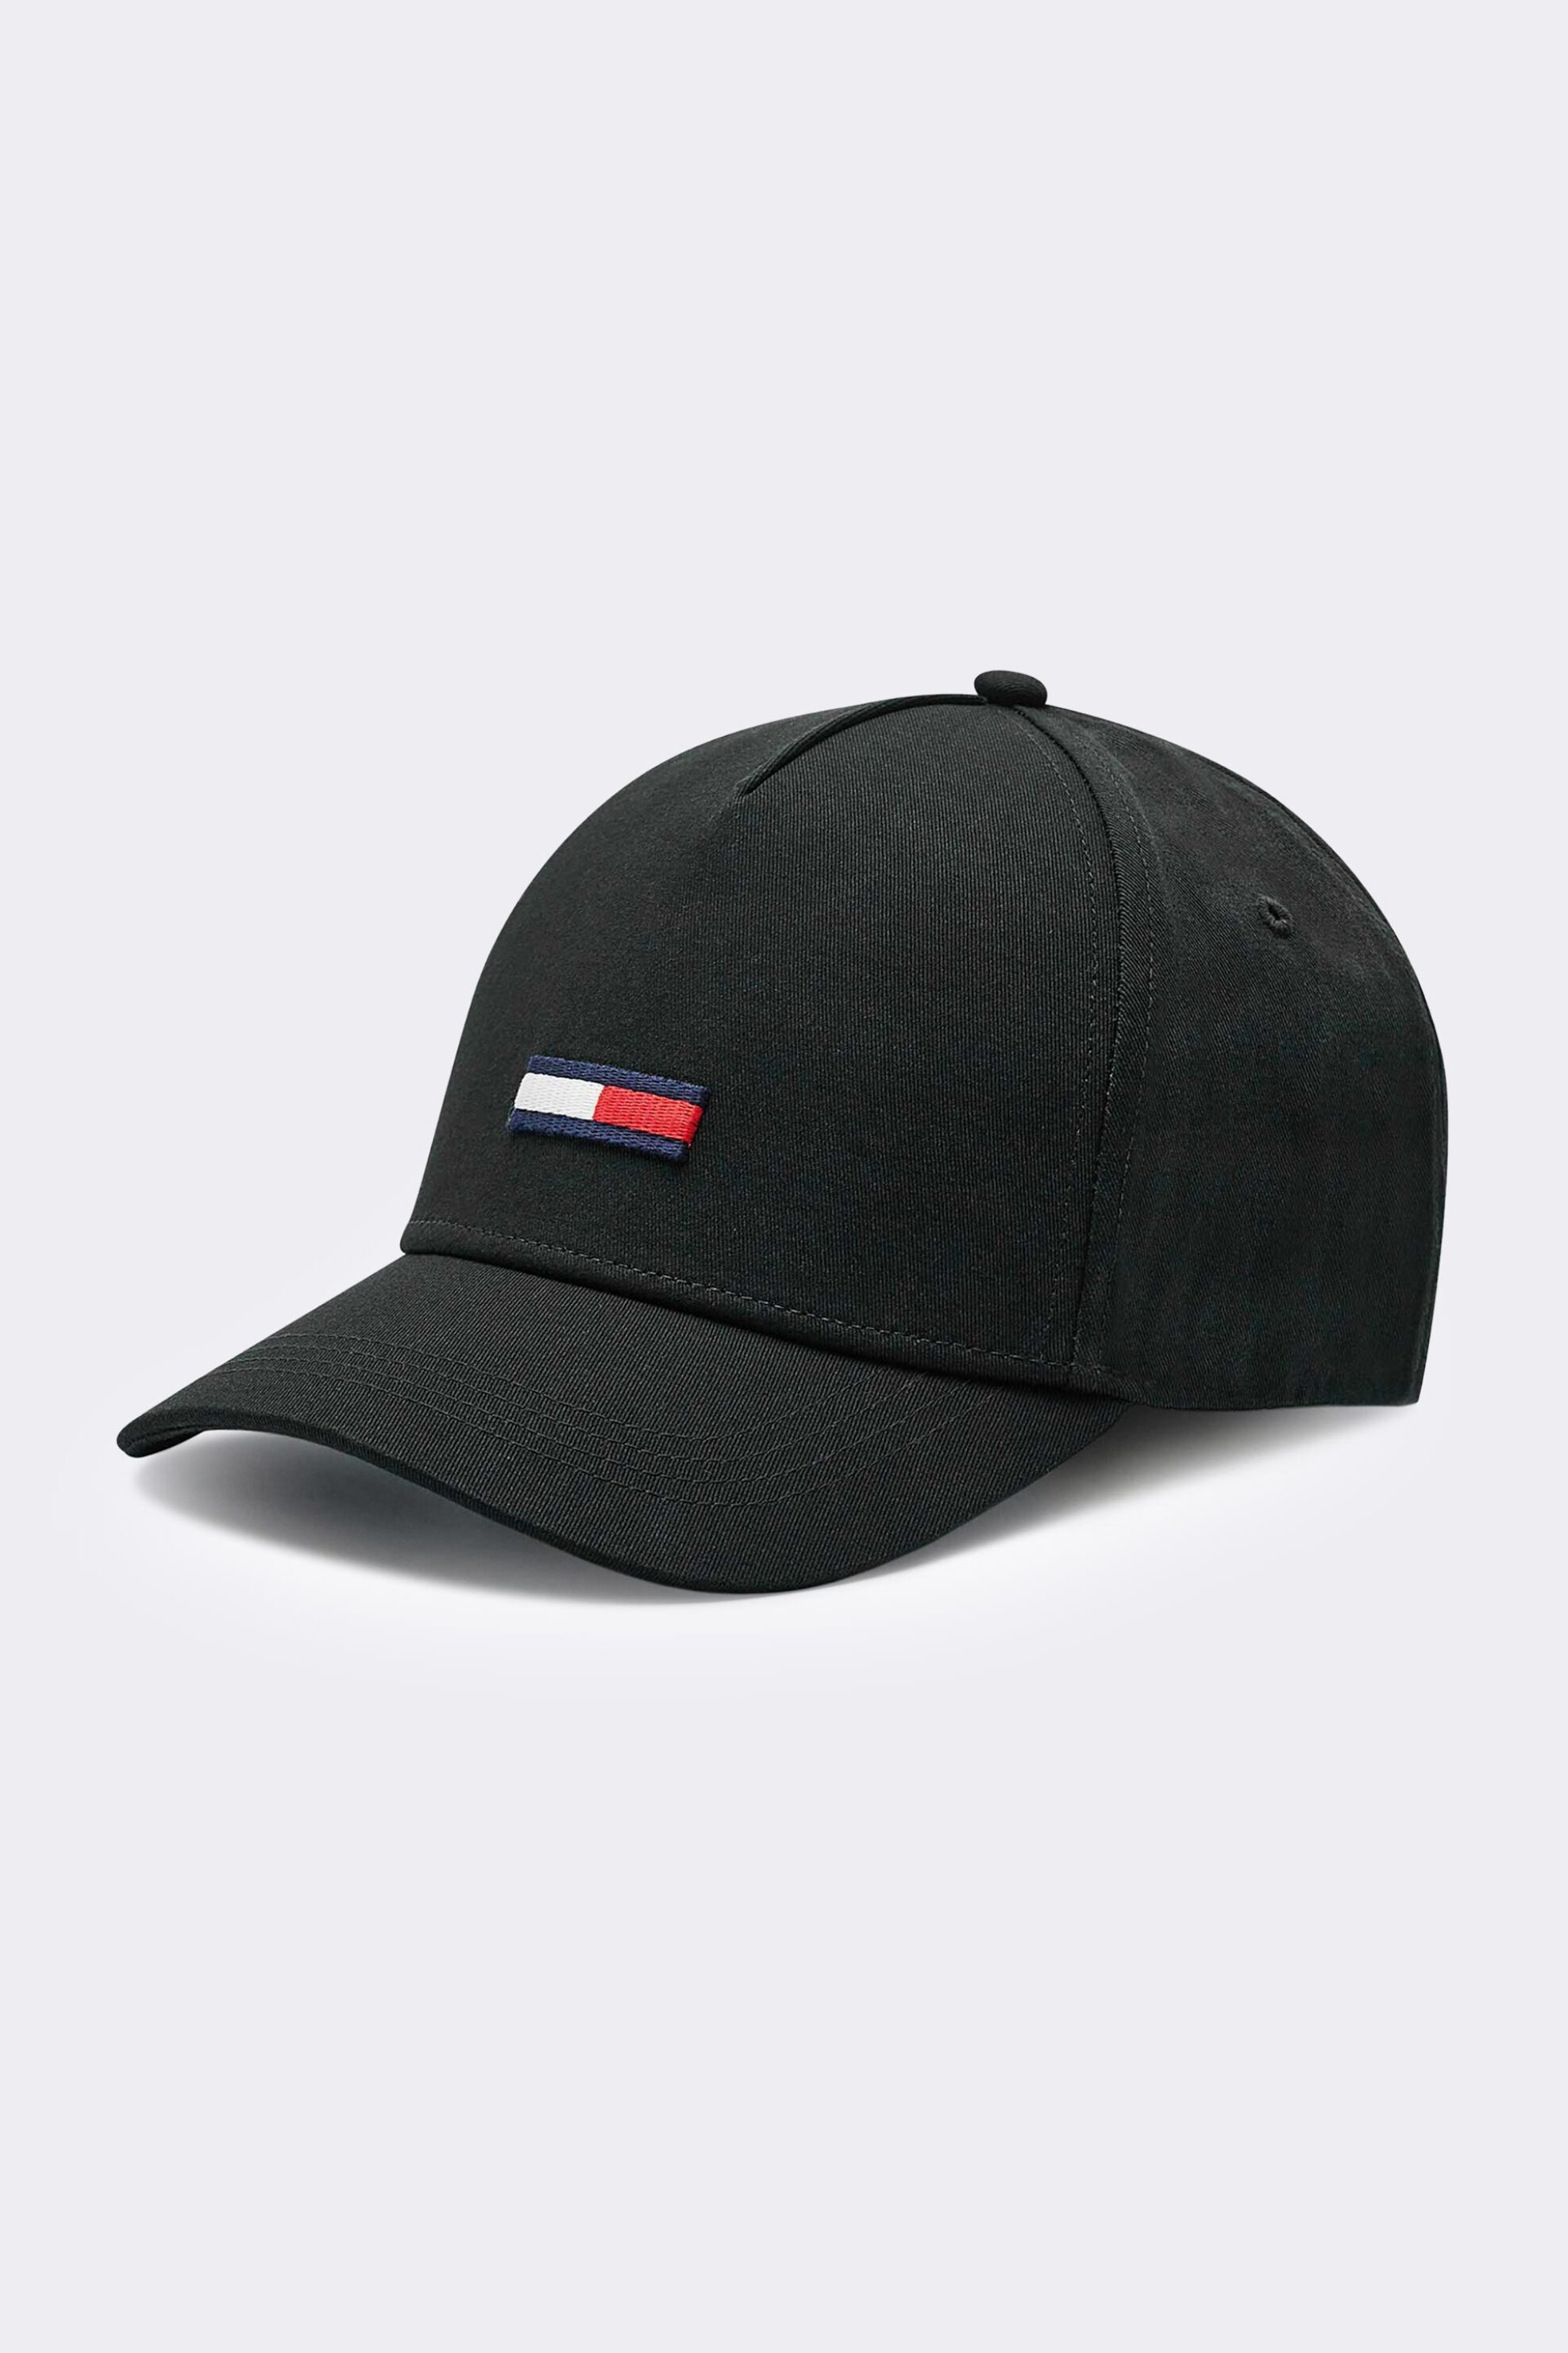 Ανδρική Μόδα > Ανδρικά Αξεσουάρ > Ανδρικά Καπέλα & Σκούφοι Tommy Jeans ανδρικό καπέλο μονόχρωμο με κεντημένο logo μπροστά - AU0AU00843 Μαύρο